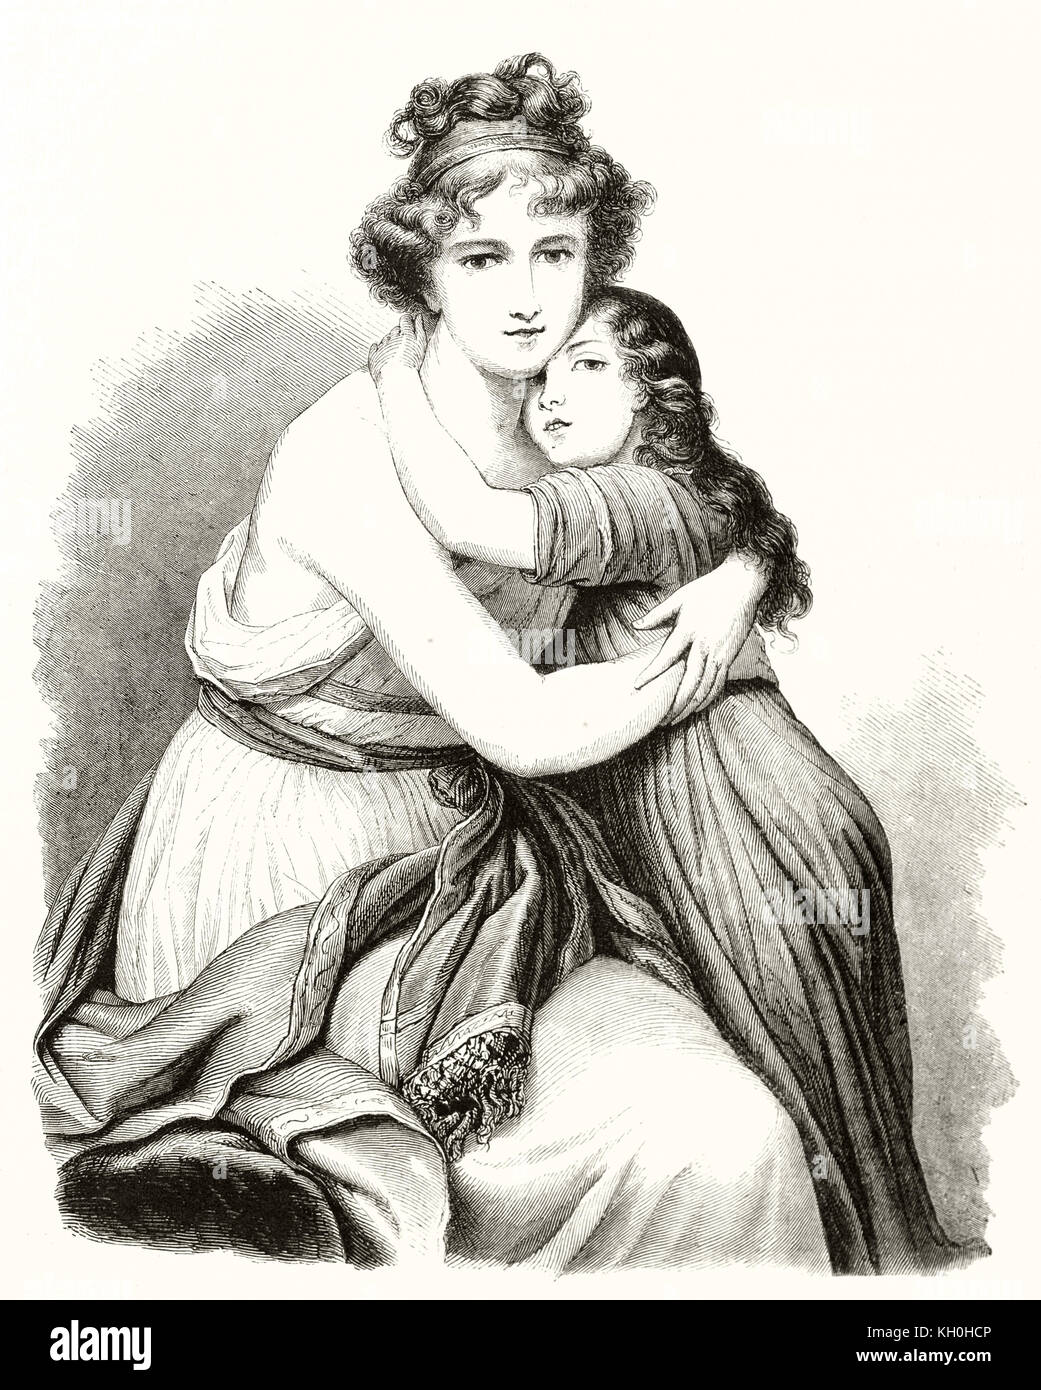 Vecchio ritratto inciso di Elisabeth Vigee Lebrun (pittore francese 1755 - 1842) e sua figlia. Da Koerner e Lavielle, publ. su Magasin pittoresco, Foto Stock